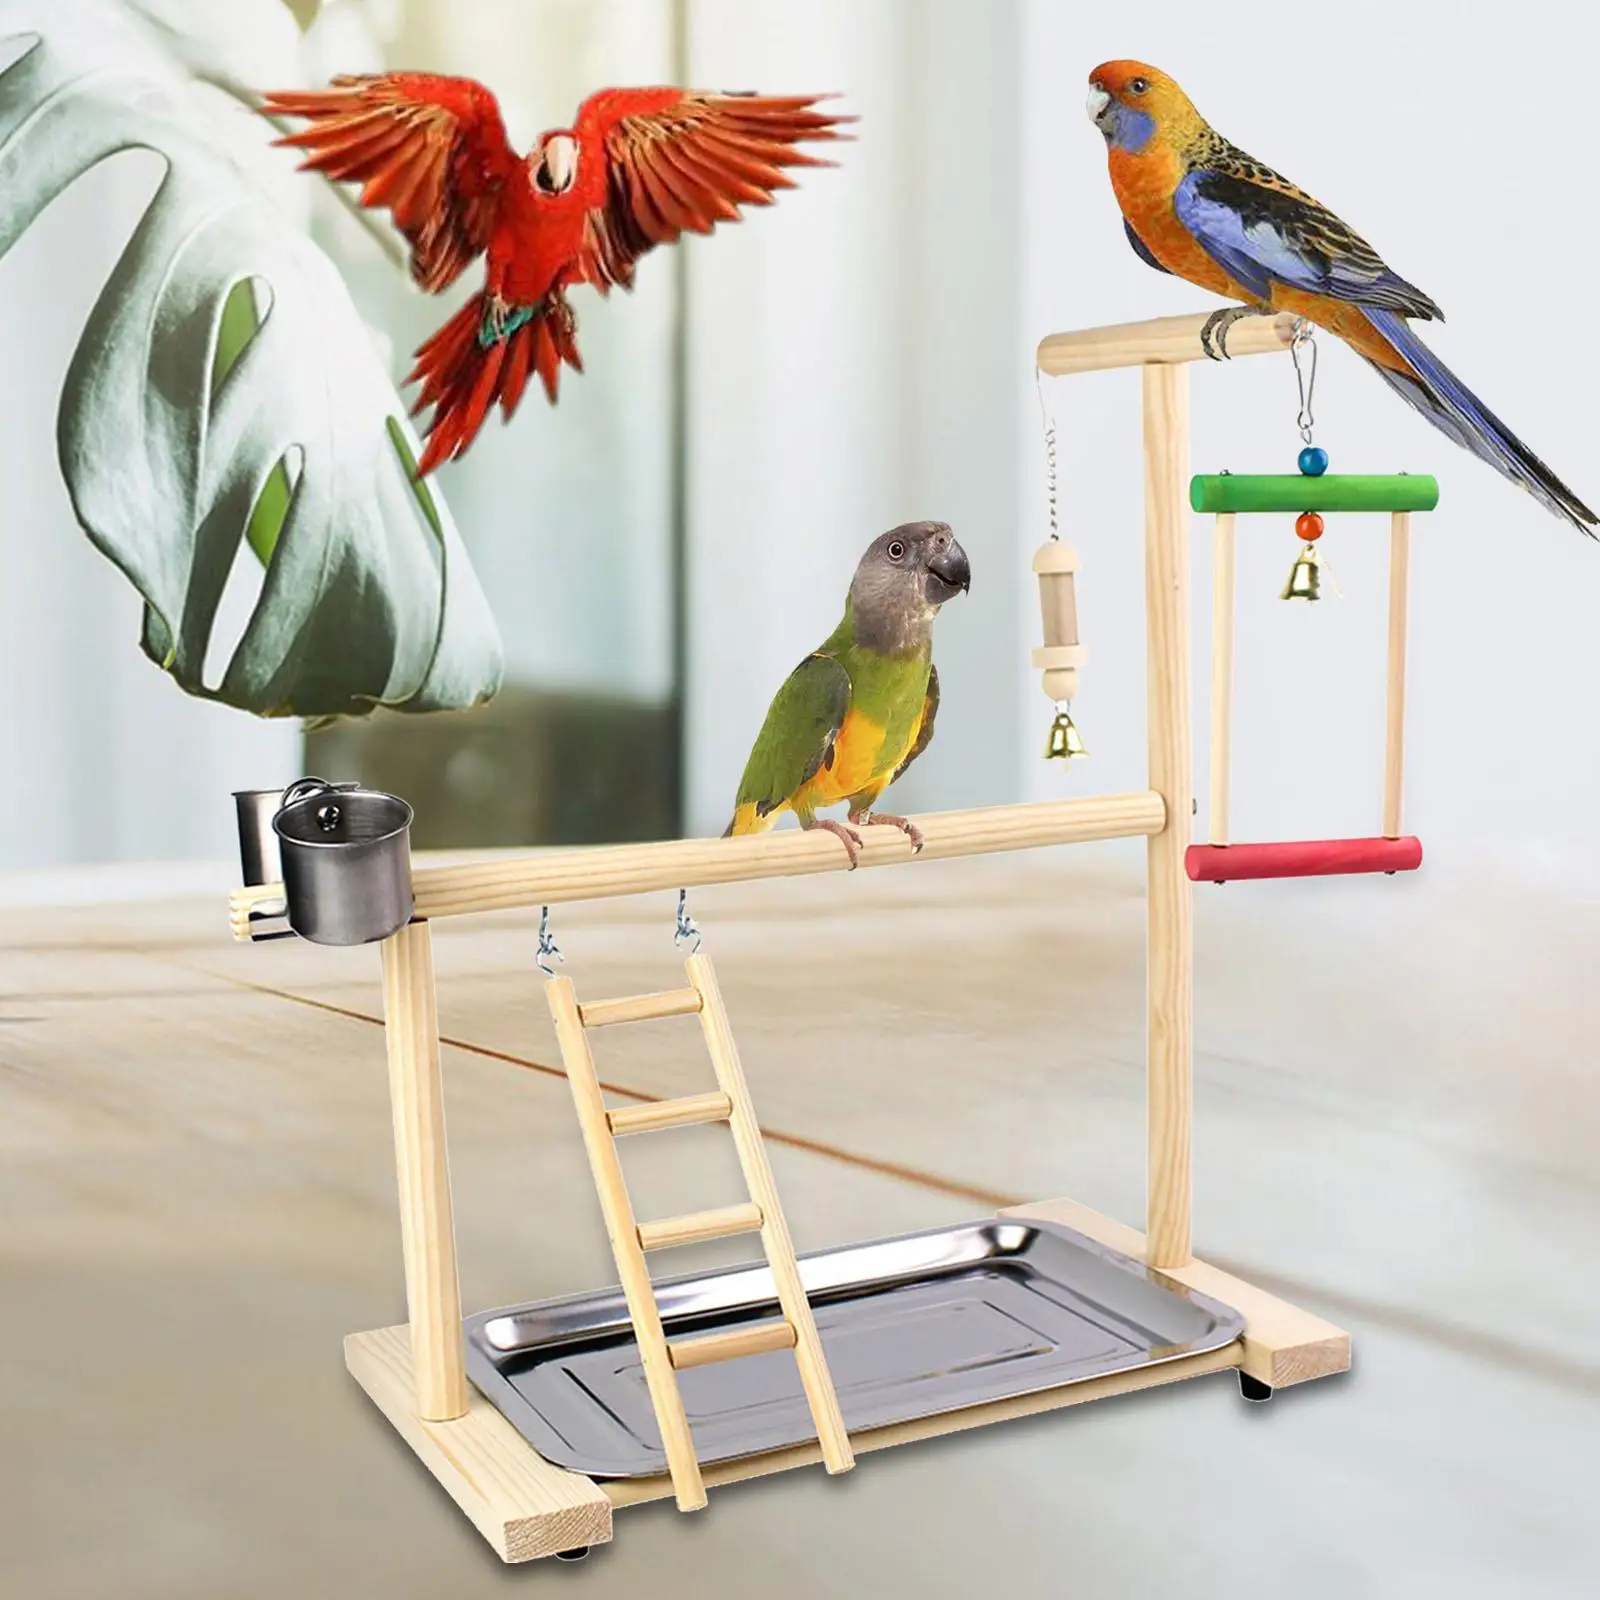 Wood Bird Platform Perch Bird Playground with Feeder Gym Ladder Exercise Bird